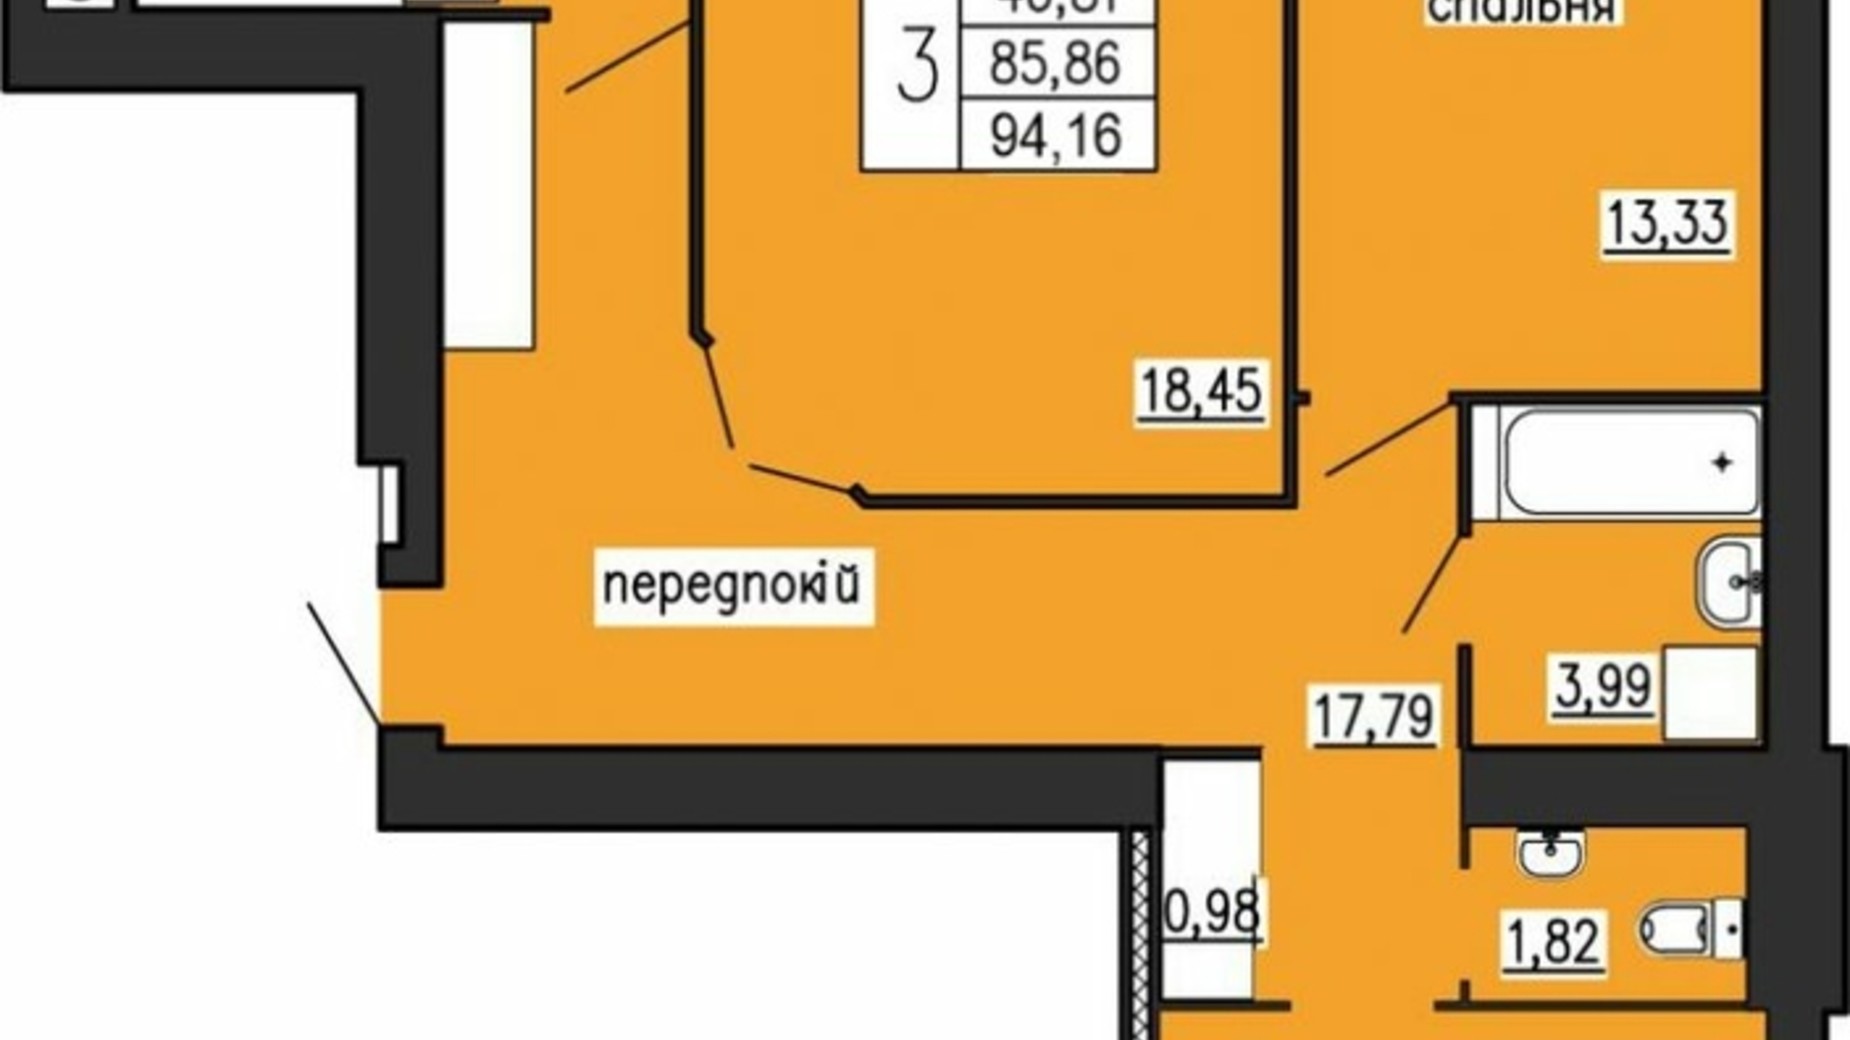 Планування 3-кімнатної квартири в ЖК по вул. Лучаківського-Тролейбусна 94.16 м², фото 615631